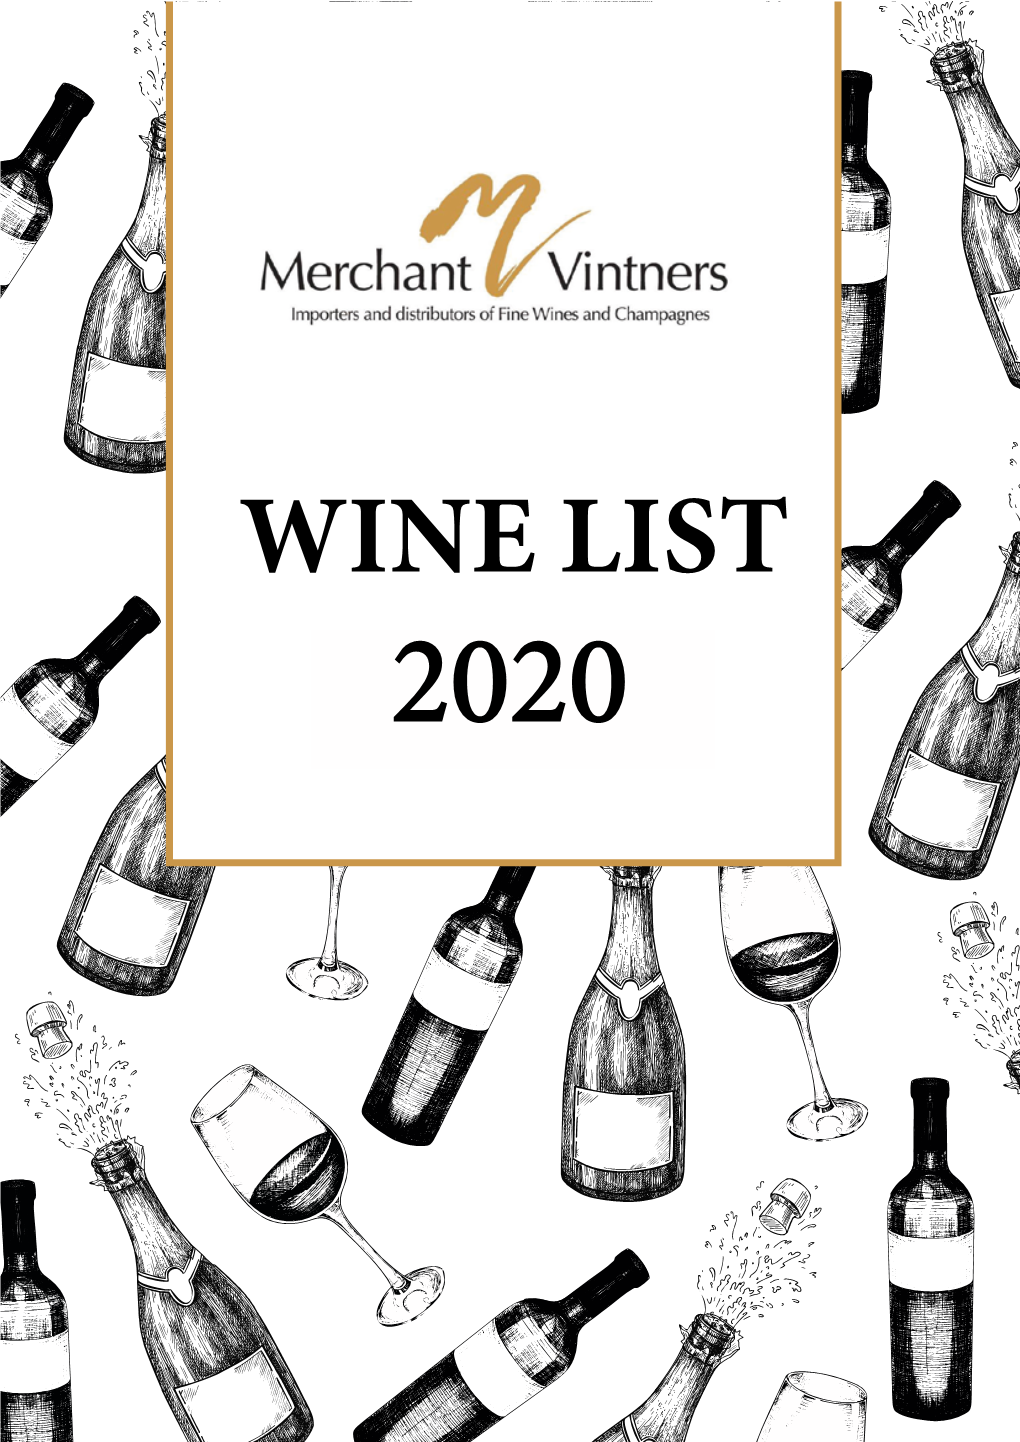 Wine List 2019